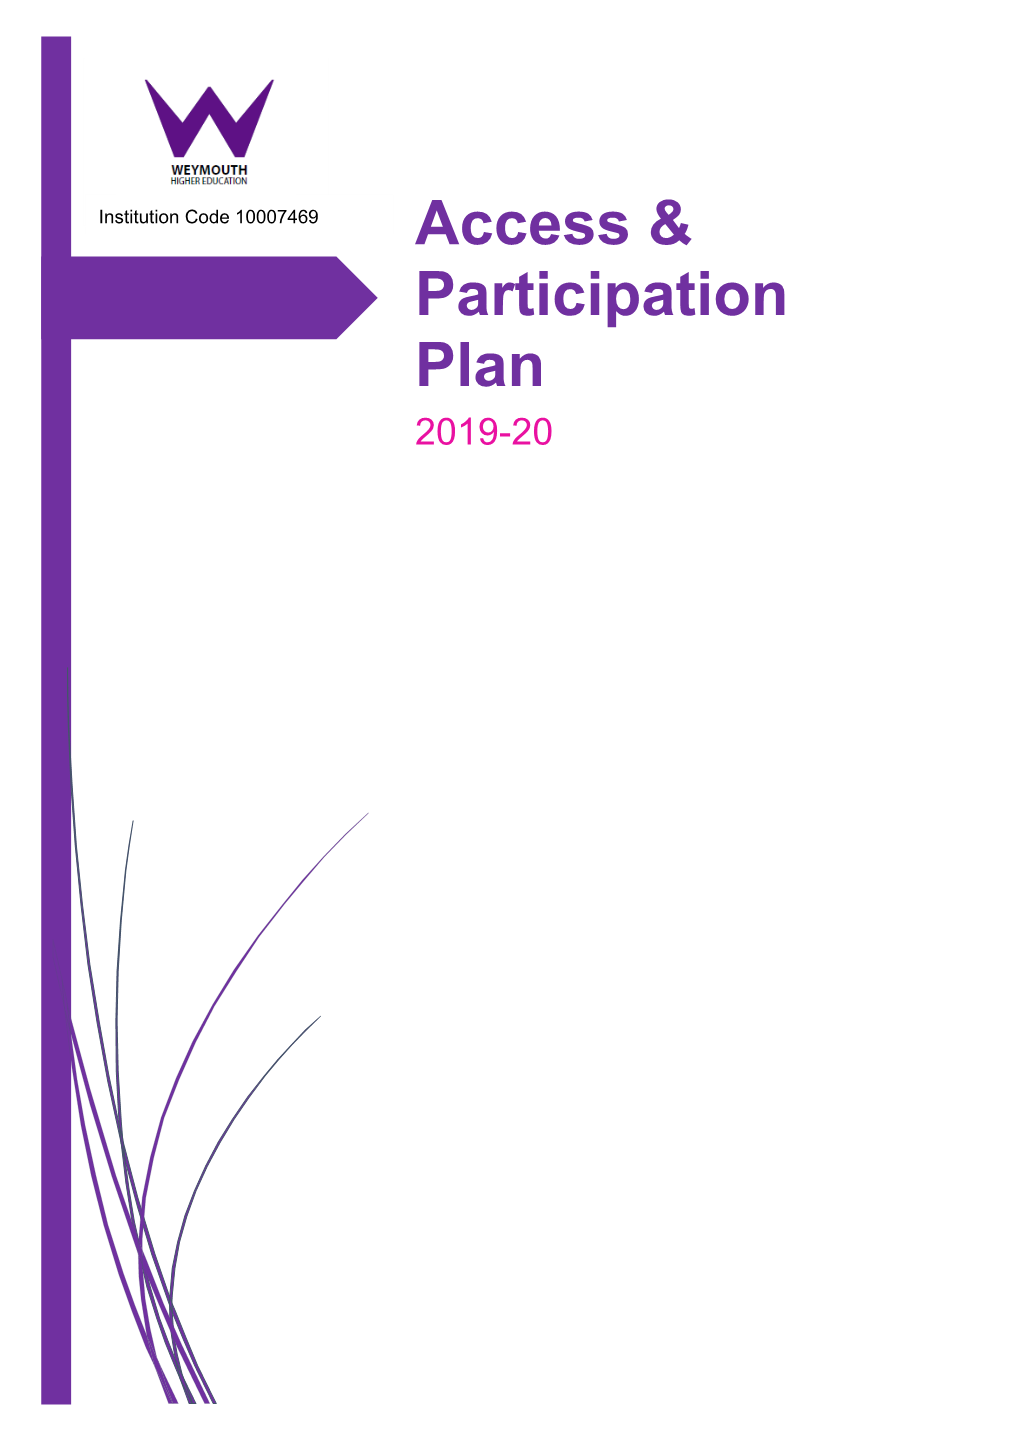 Access & Participation Plan